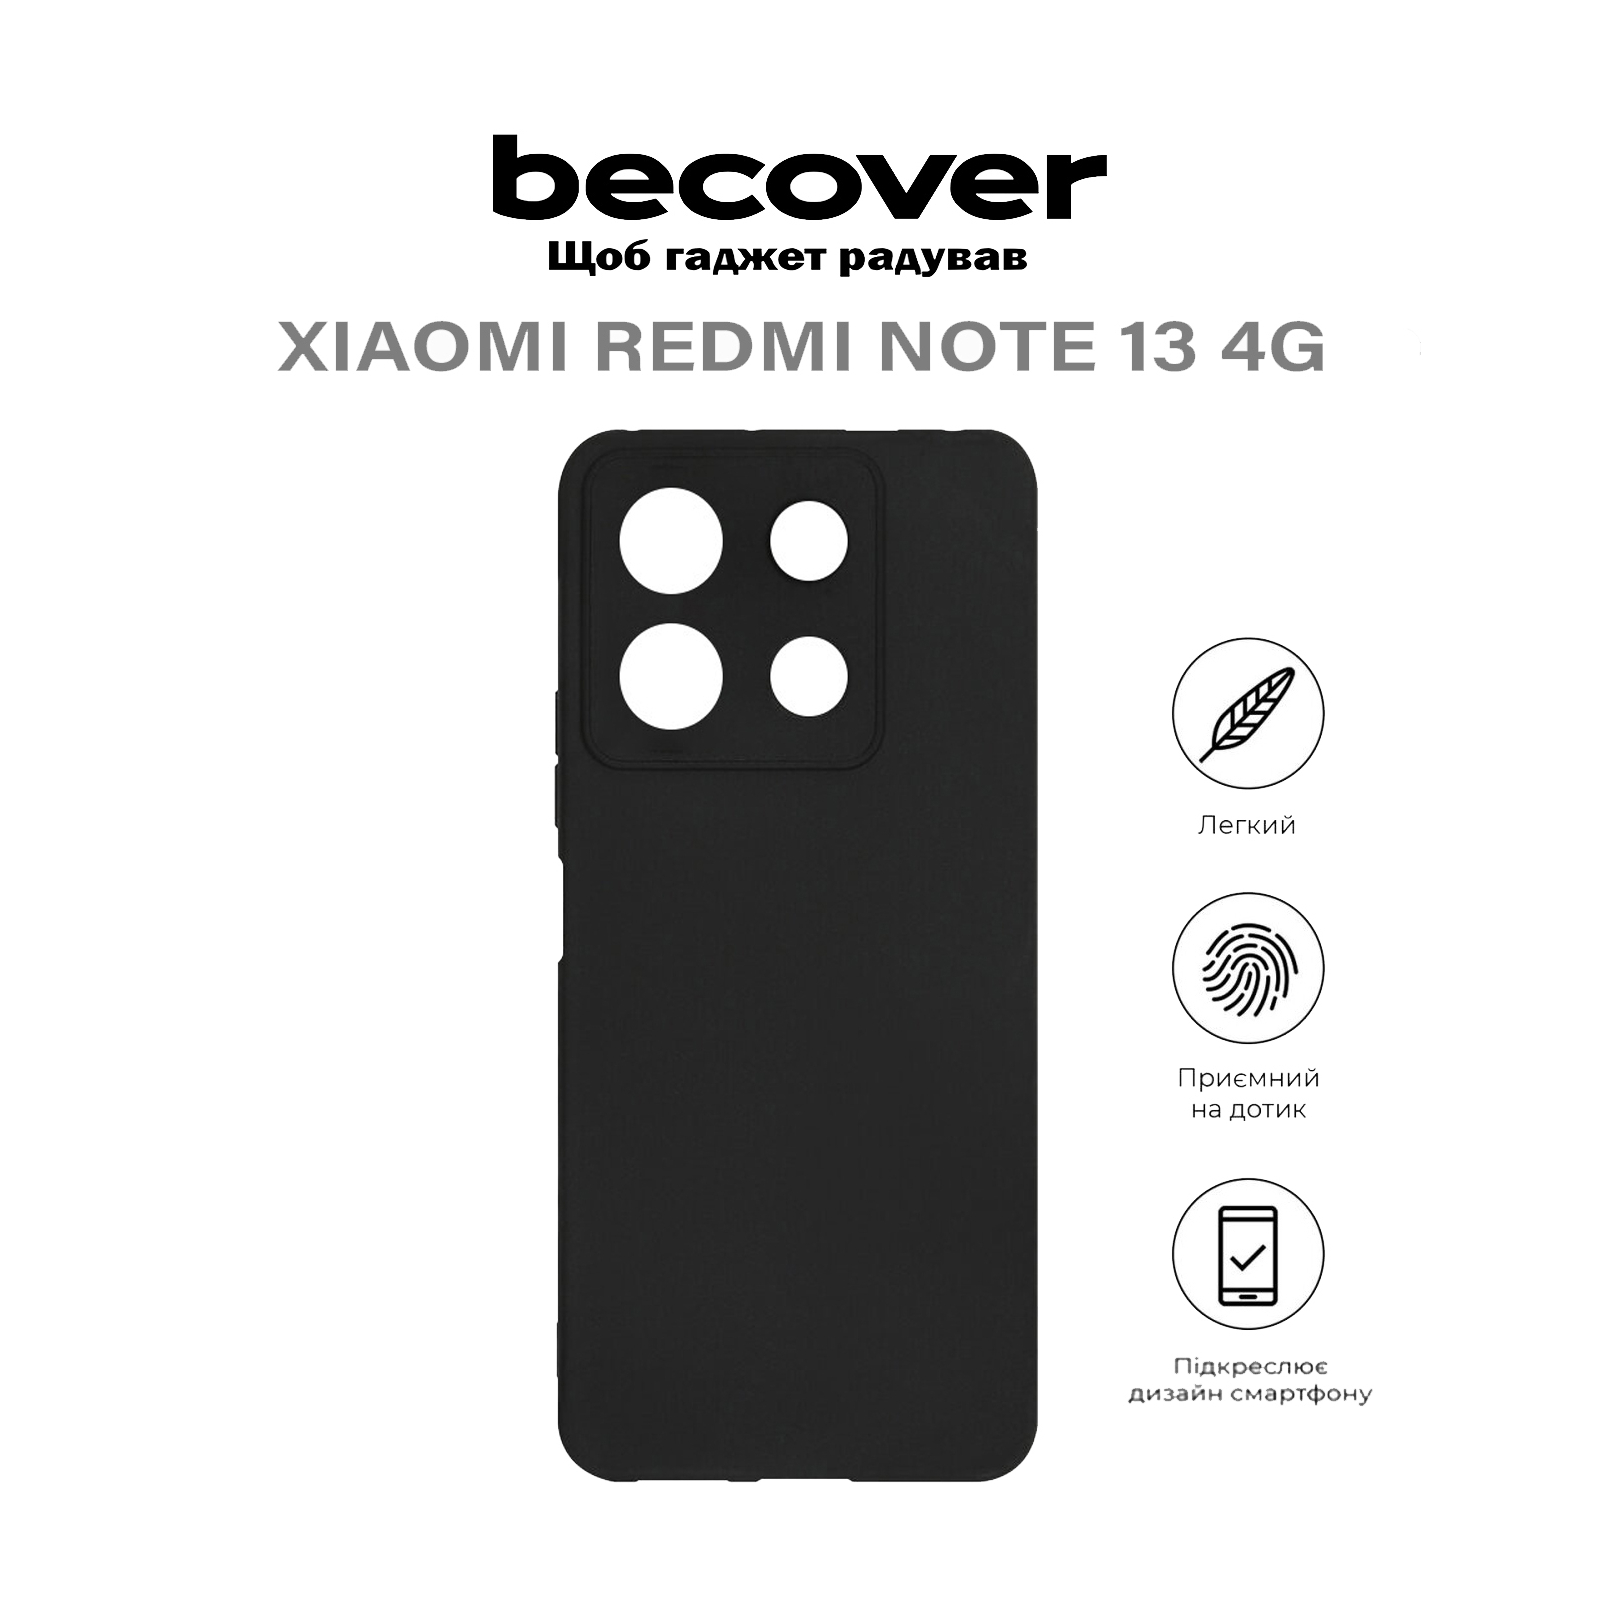 Чехол для мобильного телефона BeCover Xiaomi Redmi Note 13 4G Black (710646) изображение 5